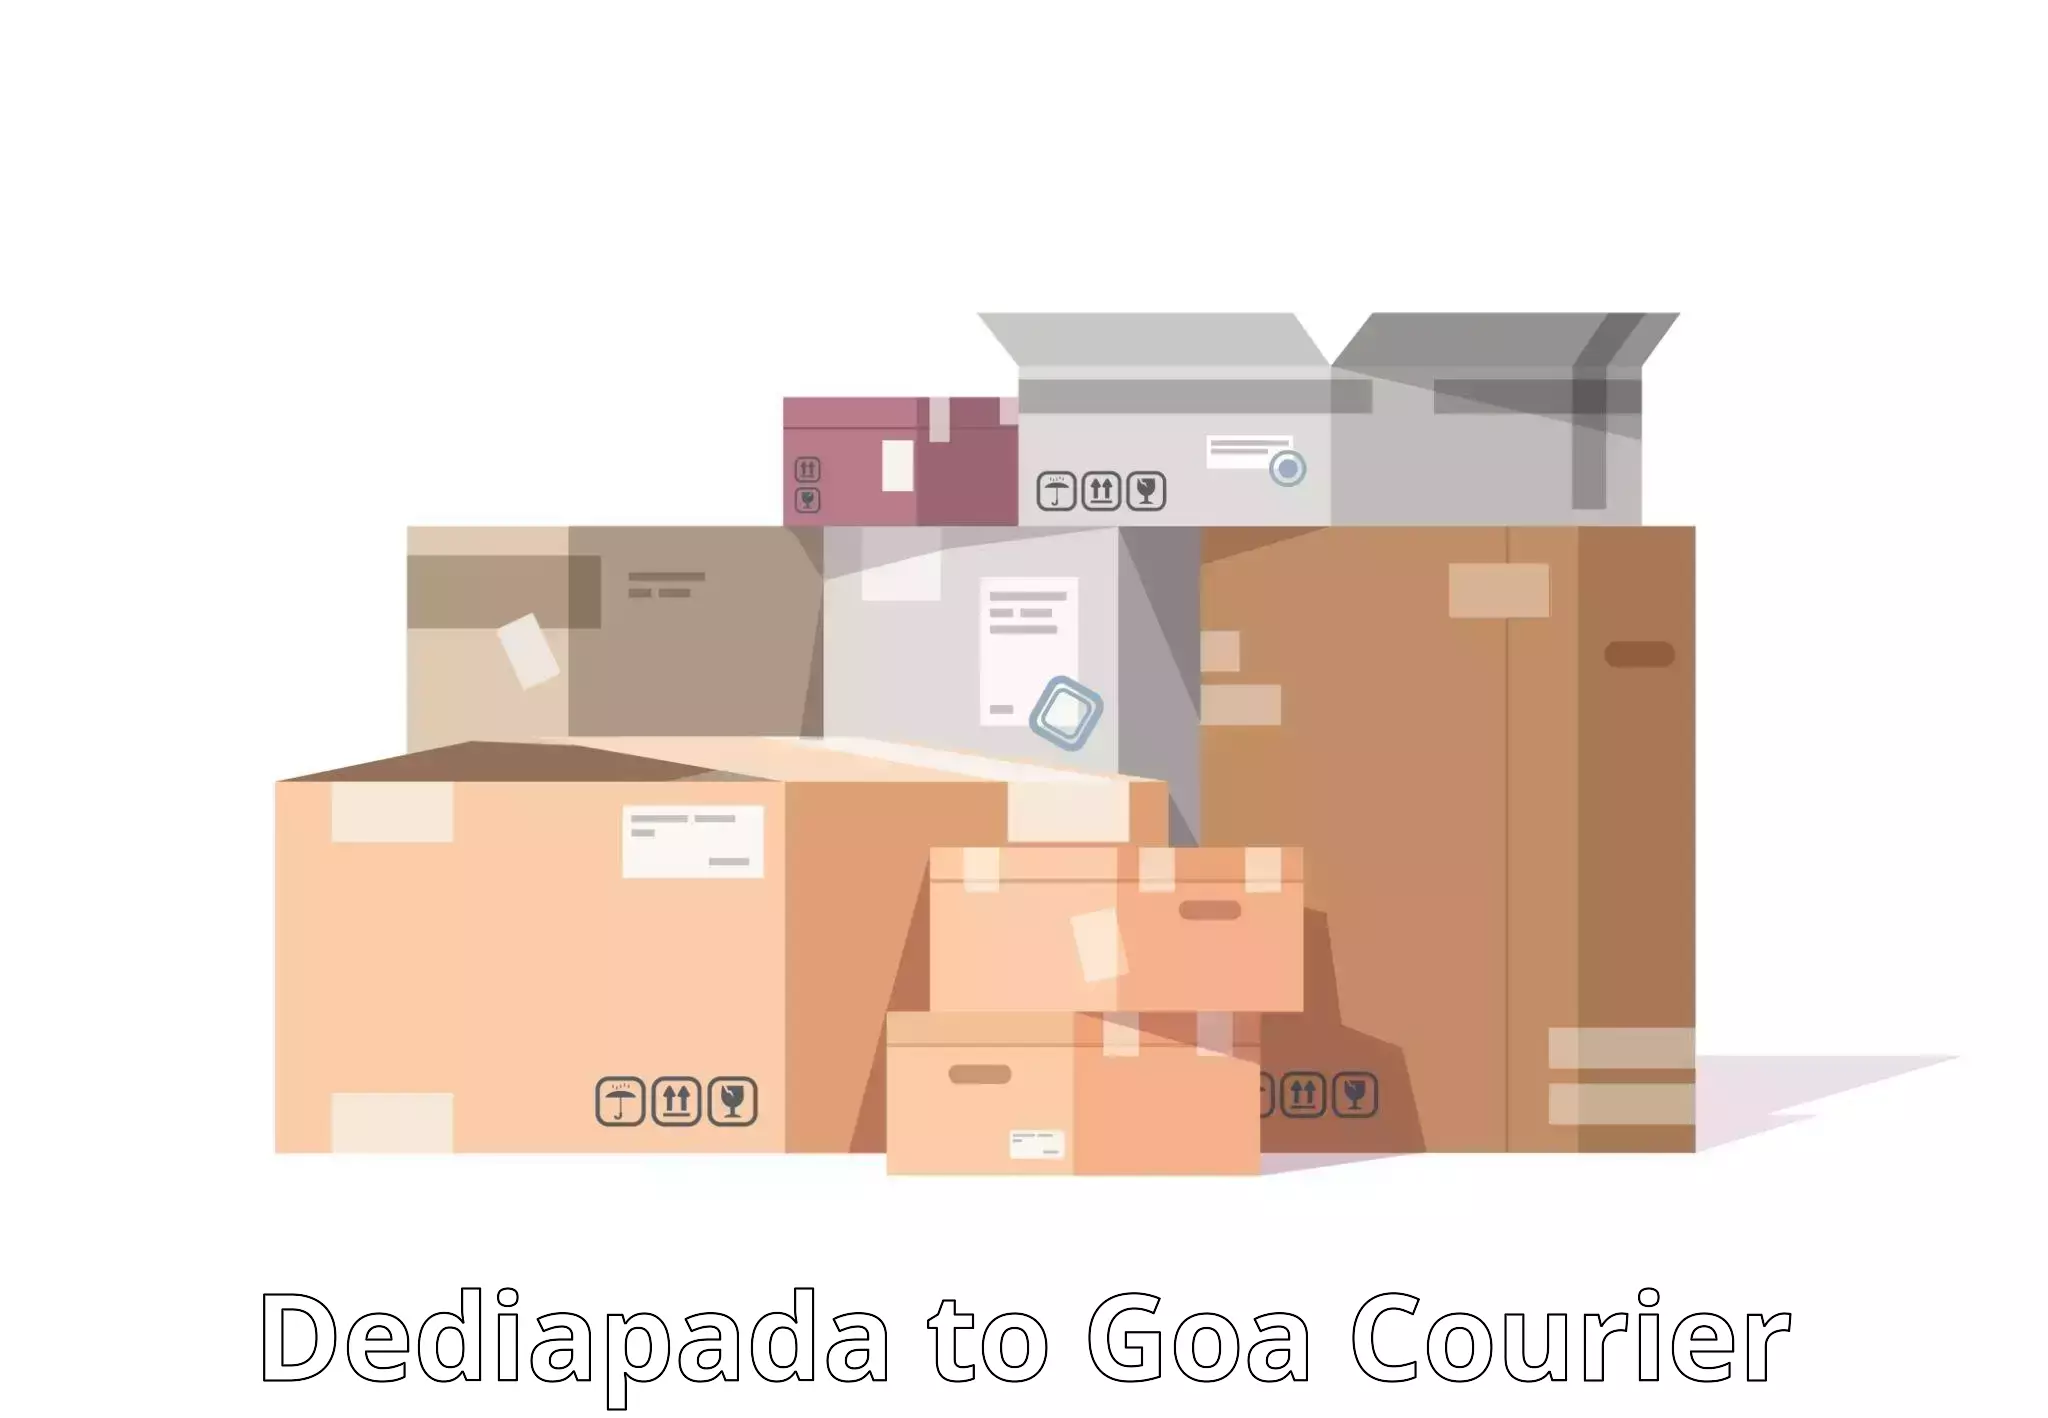 24-hour courier service Dediapada to NIT Goa